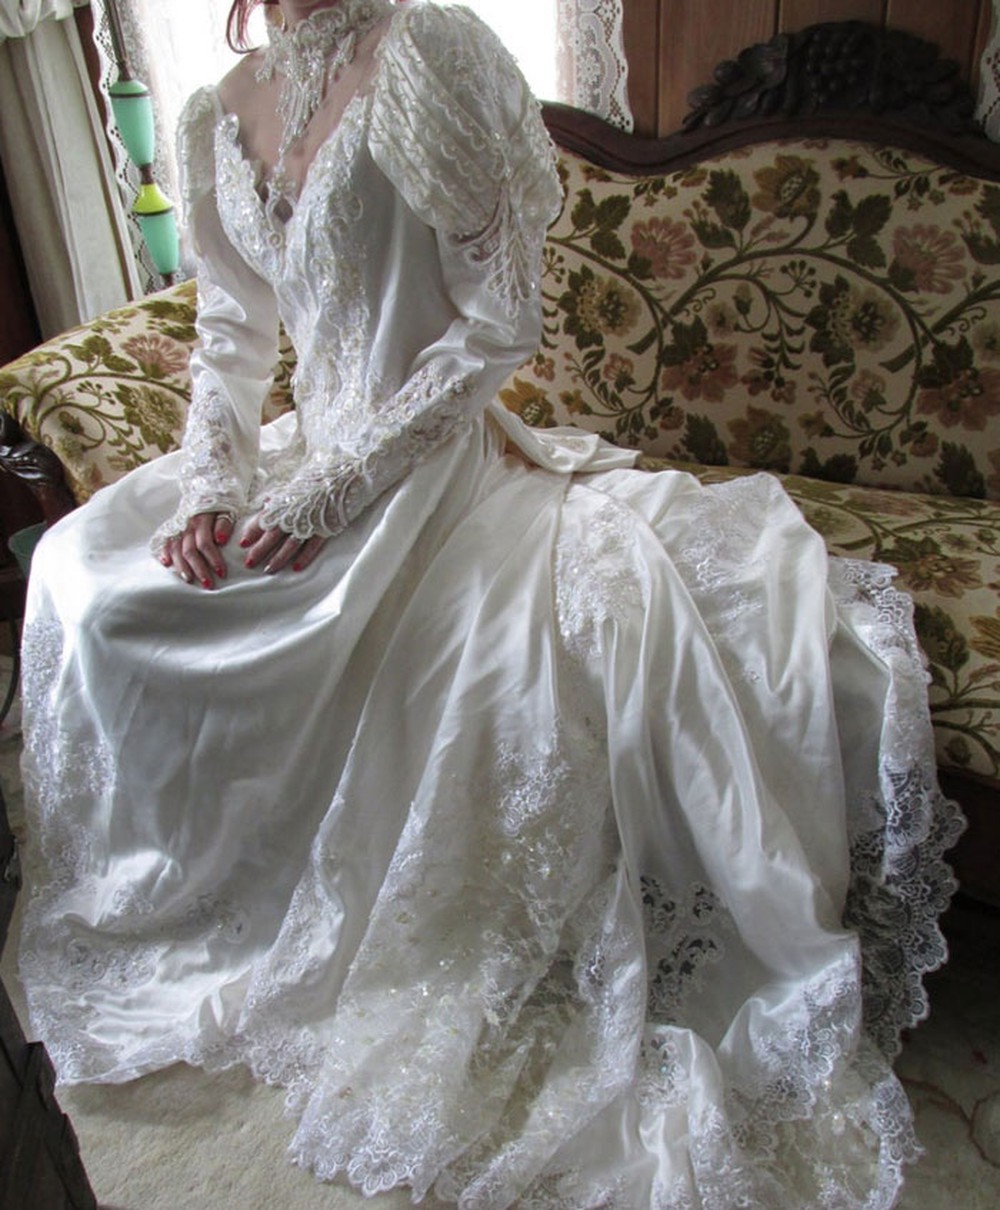 Âm mưu chiếm đoạt 1 chiếc váy cưới, cô dâu tham lam gặp phải cái kết bẽ bàng đúng ngày trọng đại - Ảnh 3.